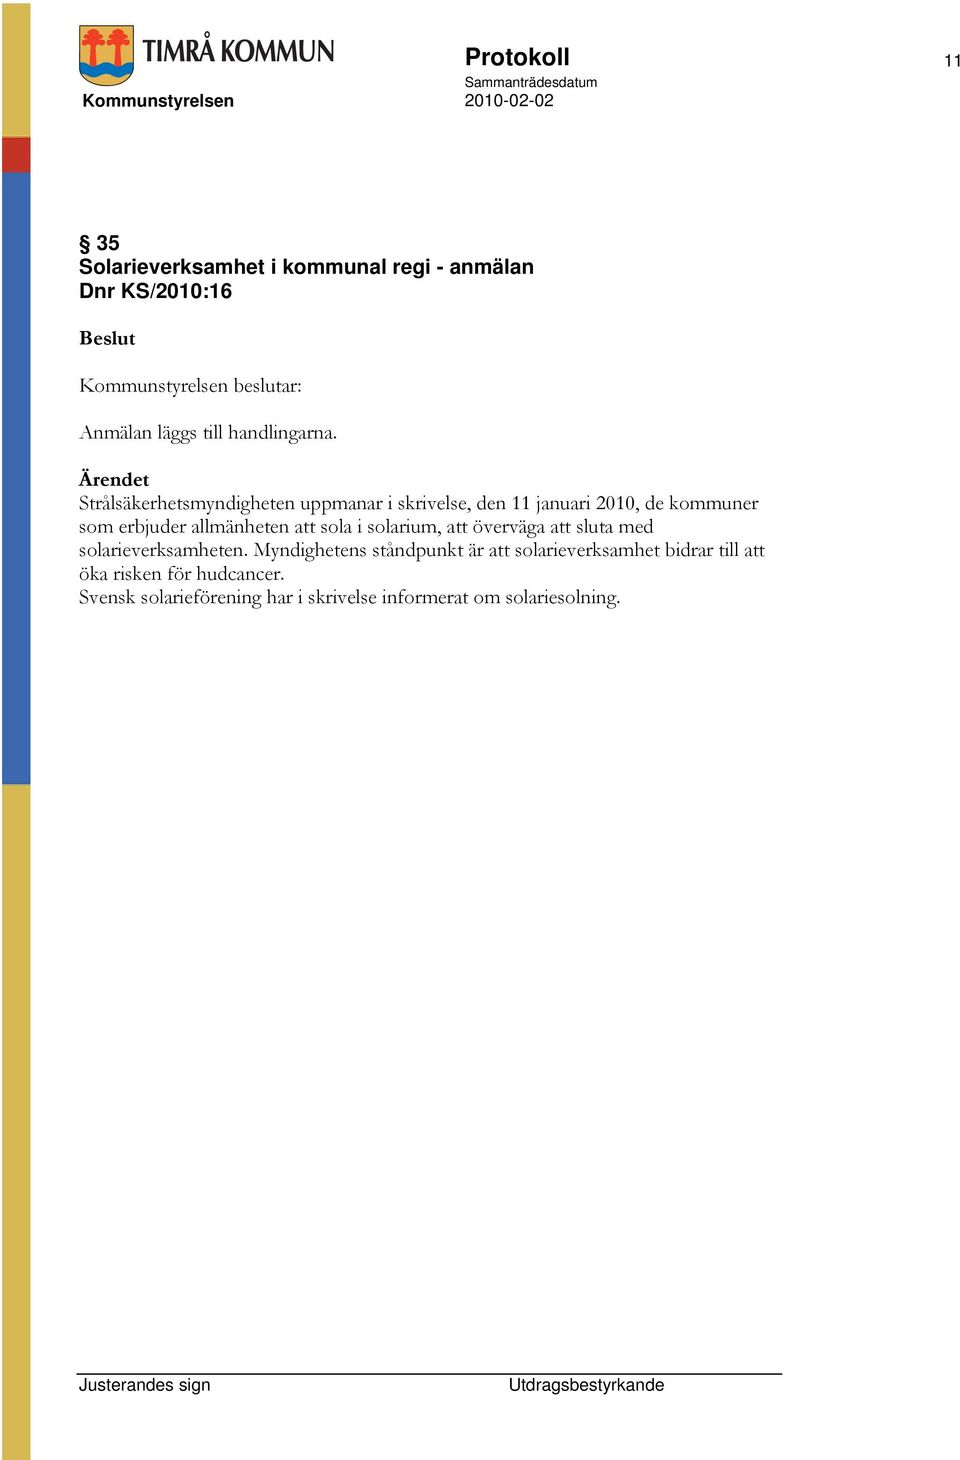 Strålsäkerhetsmyndigheten uppmanar i skrivelse, den 11 januari 2010, de kommuner som erbjuder allmänheten att sola i